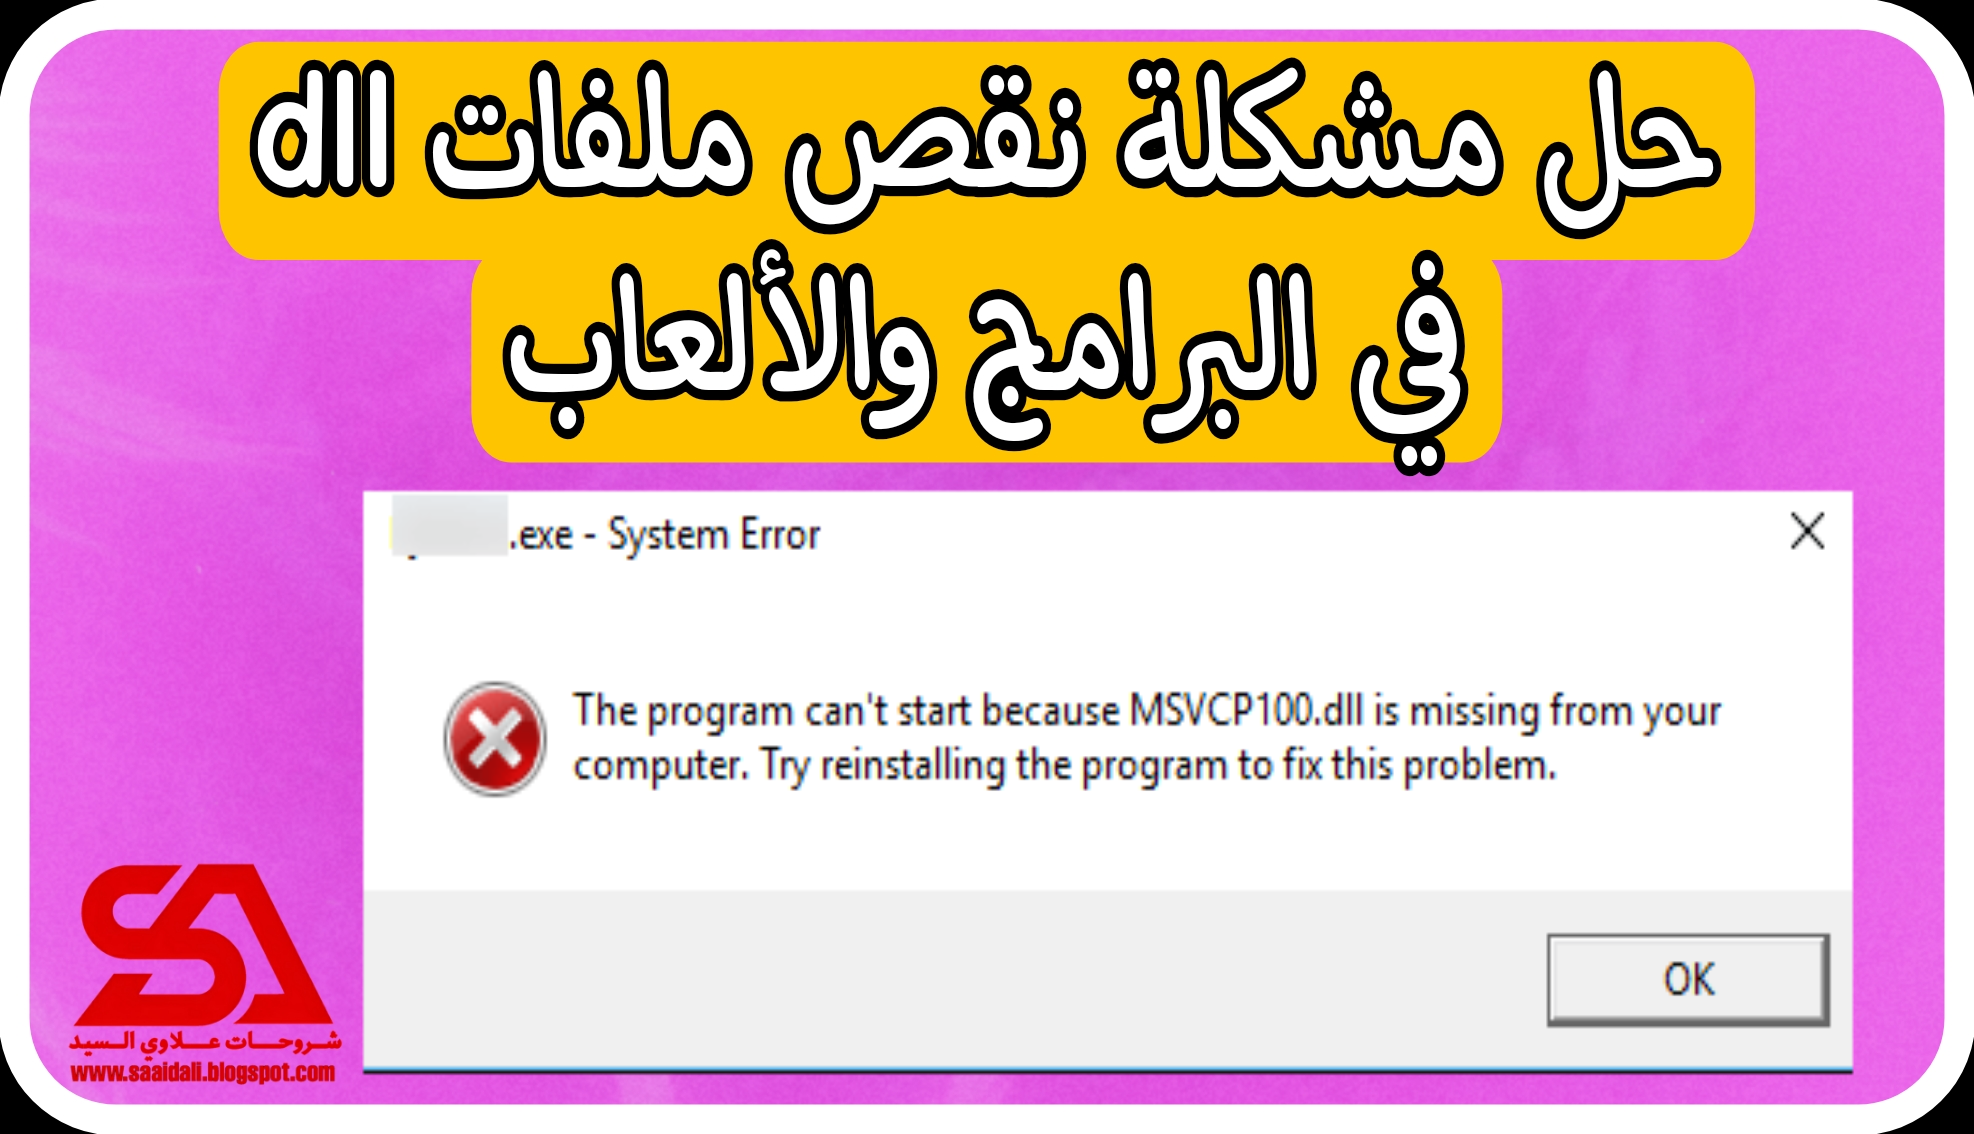 حل مشكلة msvcp100.dll في جميع العاب و البرامج